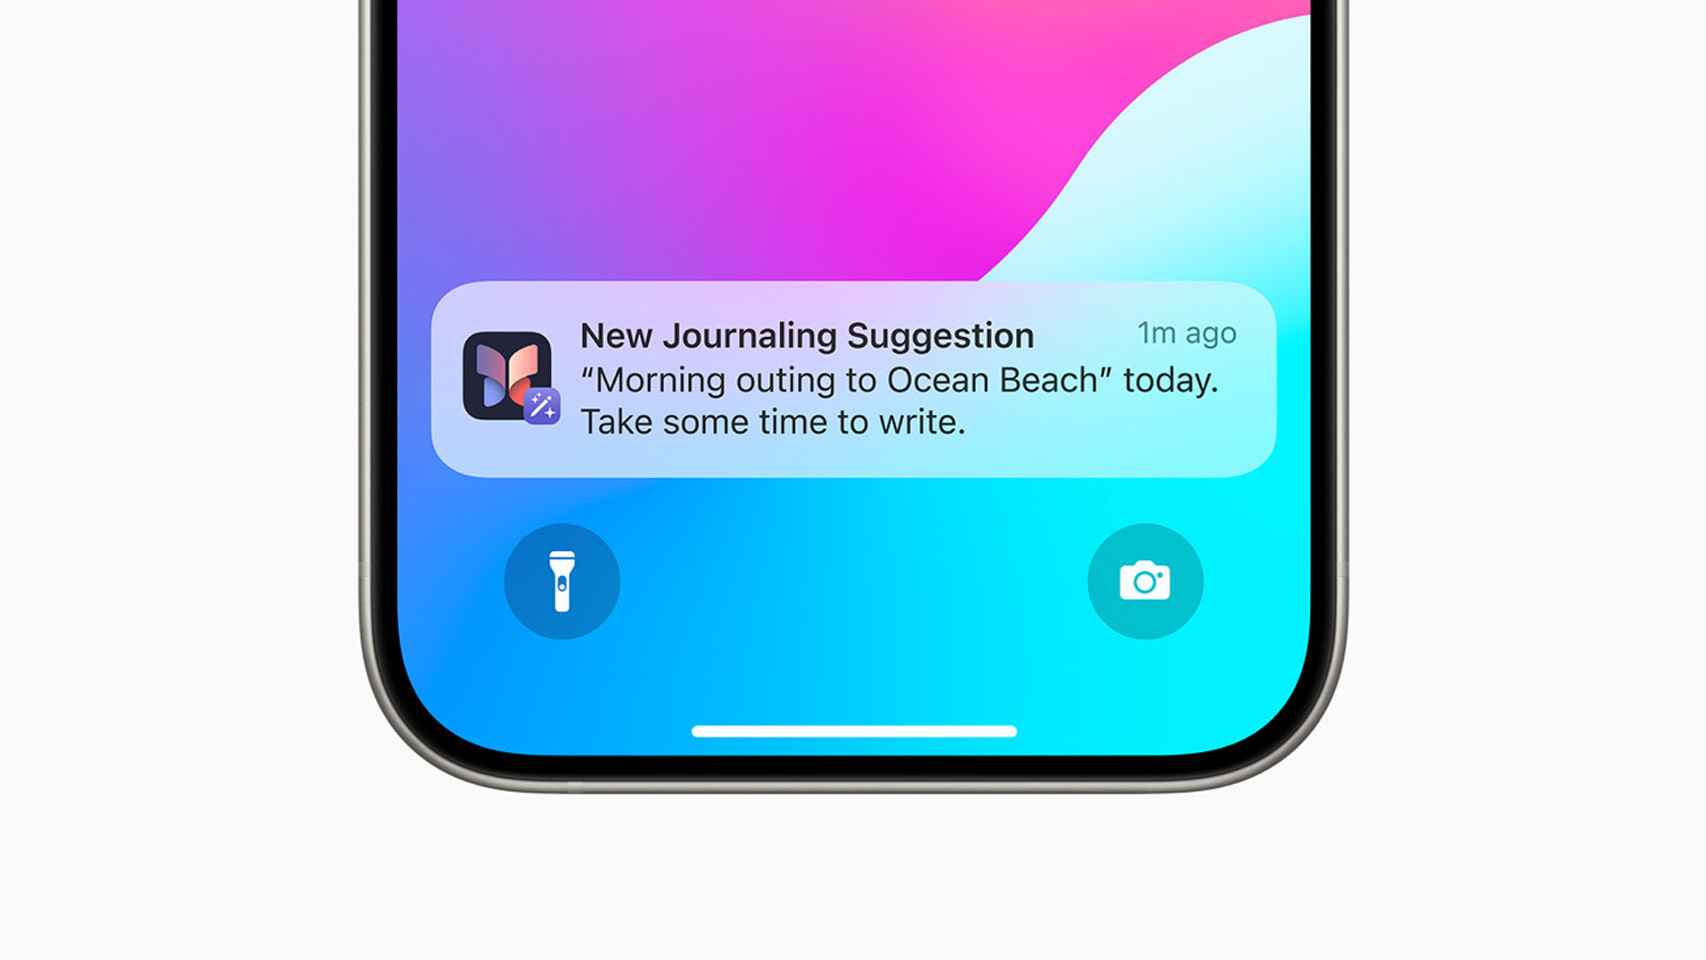 Ejemplo de sugerencia en forma de notificación en un iPhone.